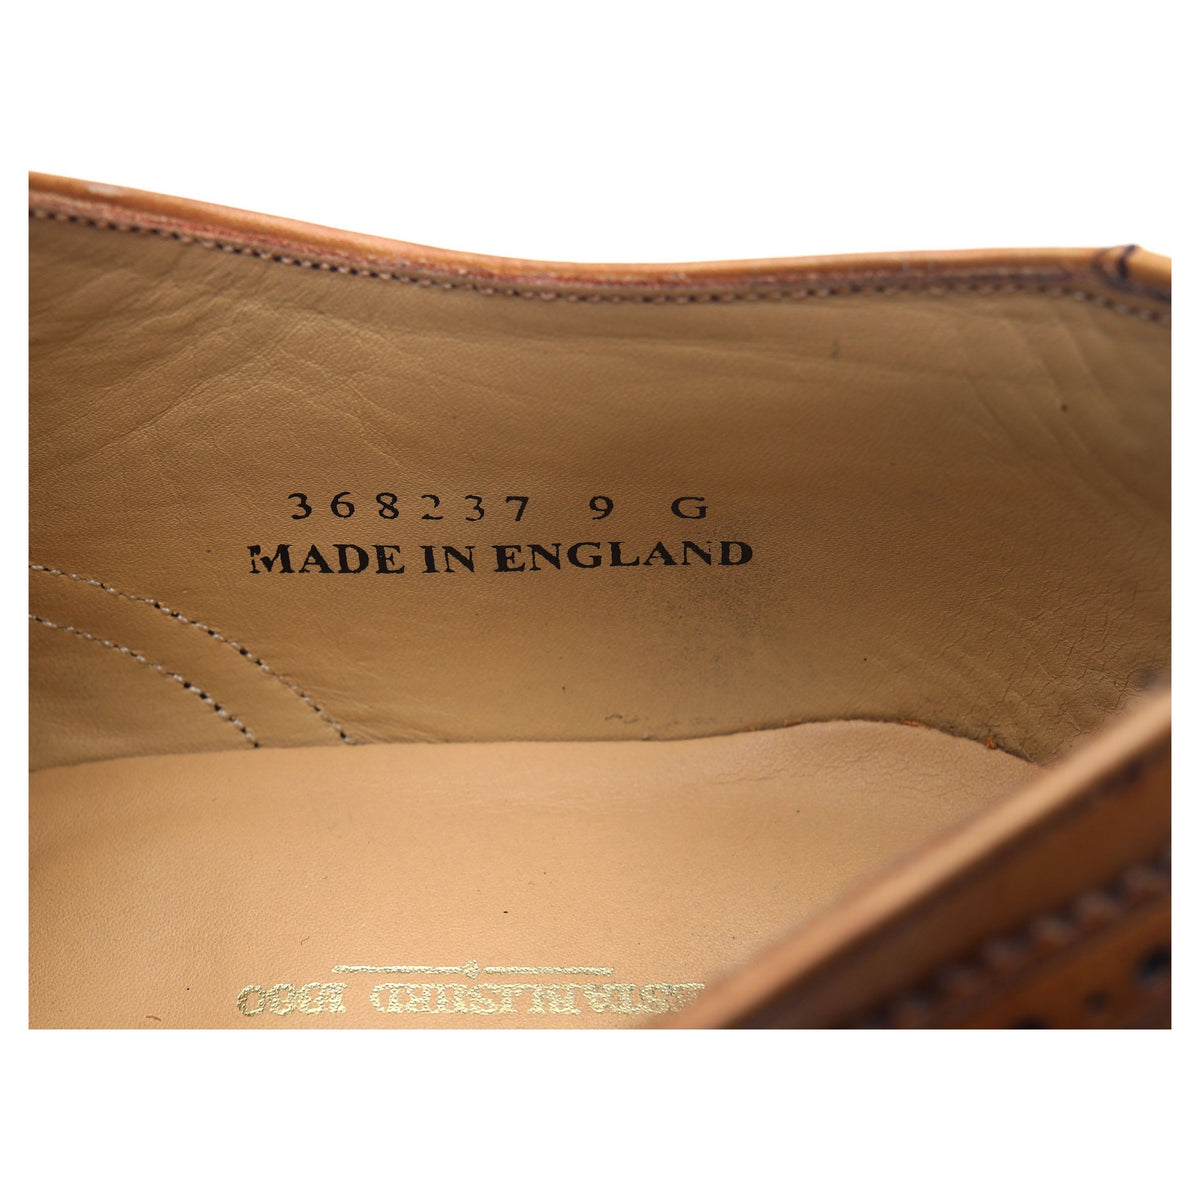 &#39;Newport&#39; Tan Brown Leather Brogues UK 9 G